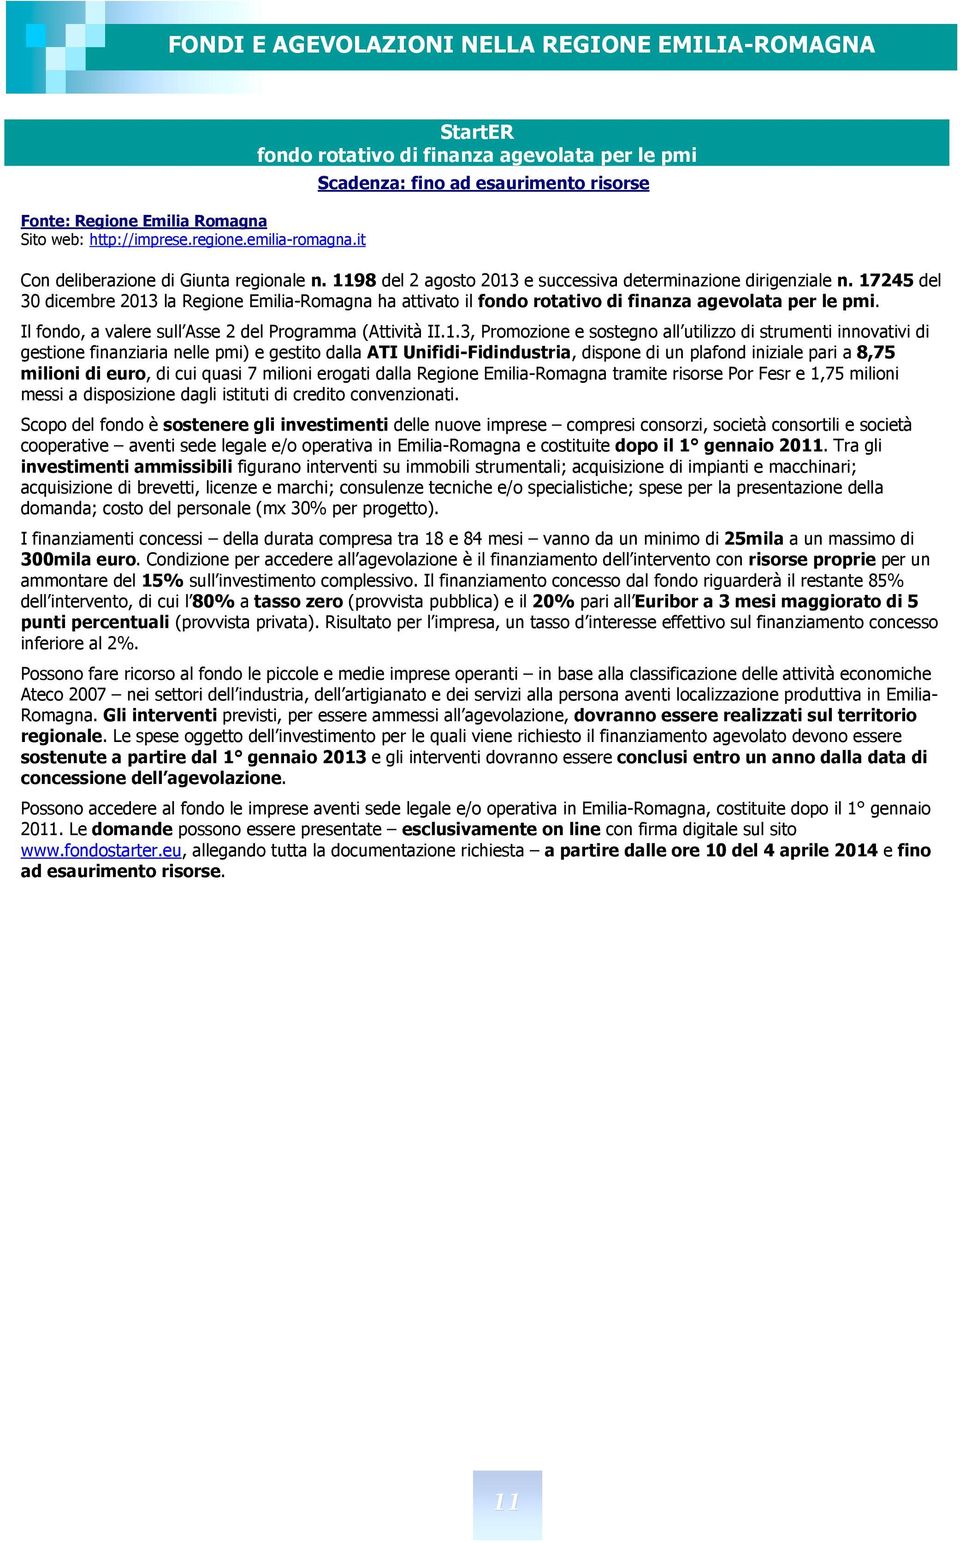 1198 del 2 agosto 2013 e successiva determinazione dirigenziale n. 17245 del 30 dicembre 2013 la Regione Emilia Romagna ha attivato il fondo rotativo di finanza agevolata per le pmi.